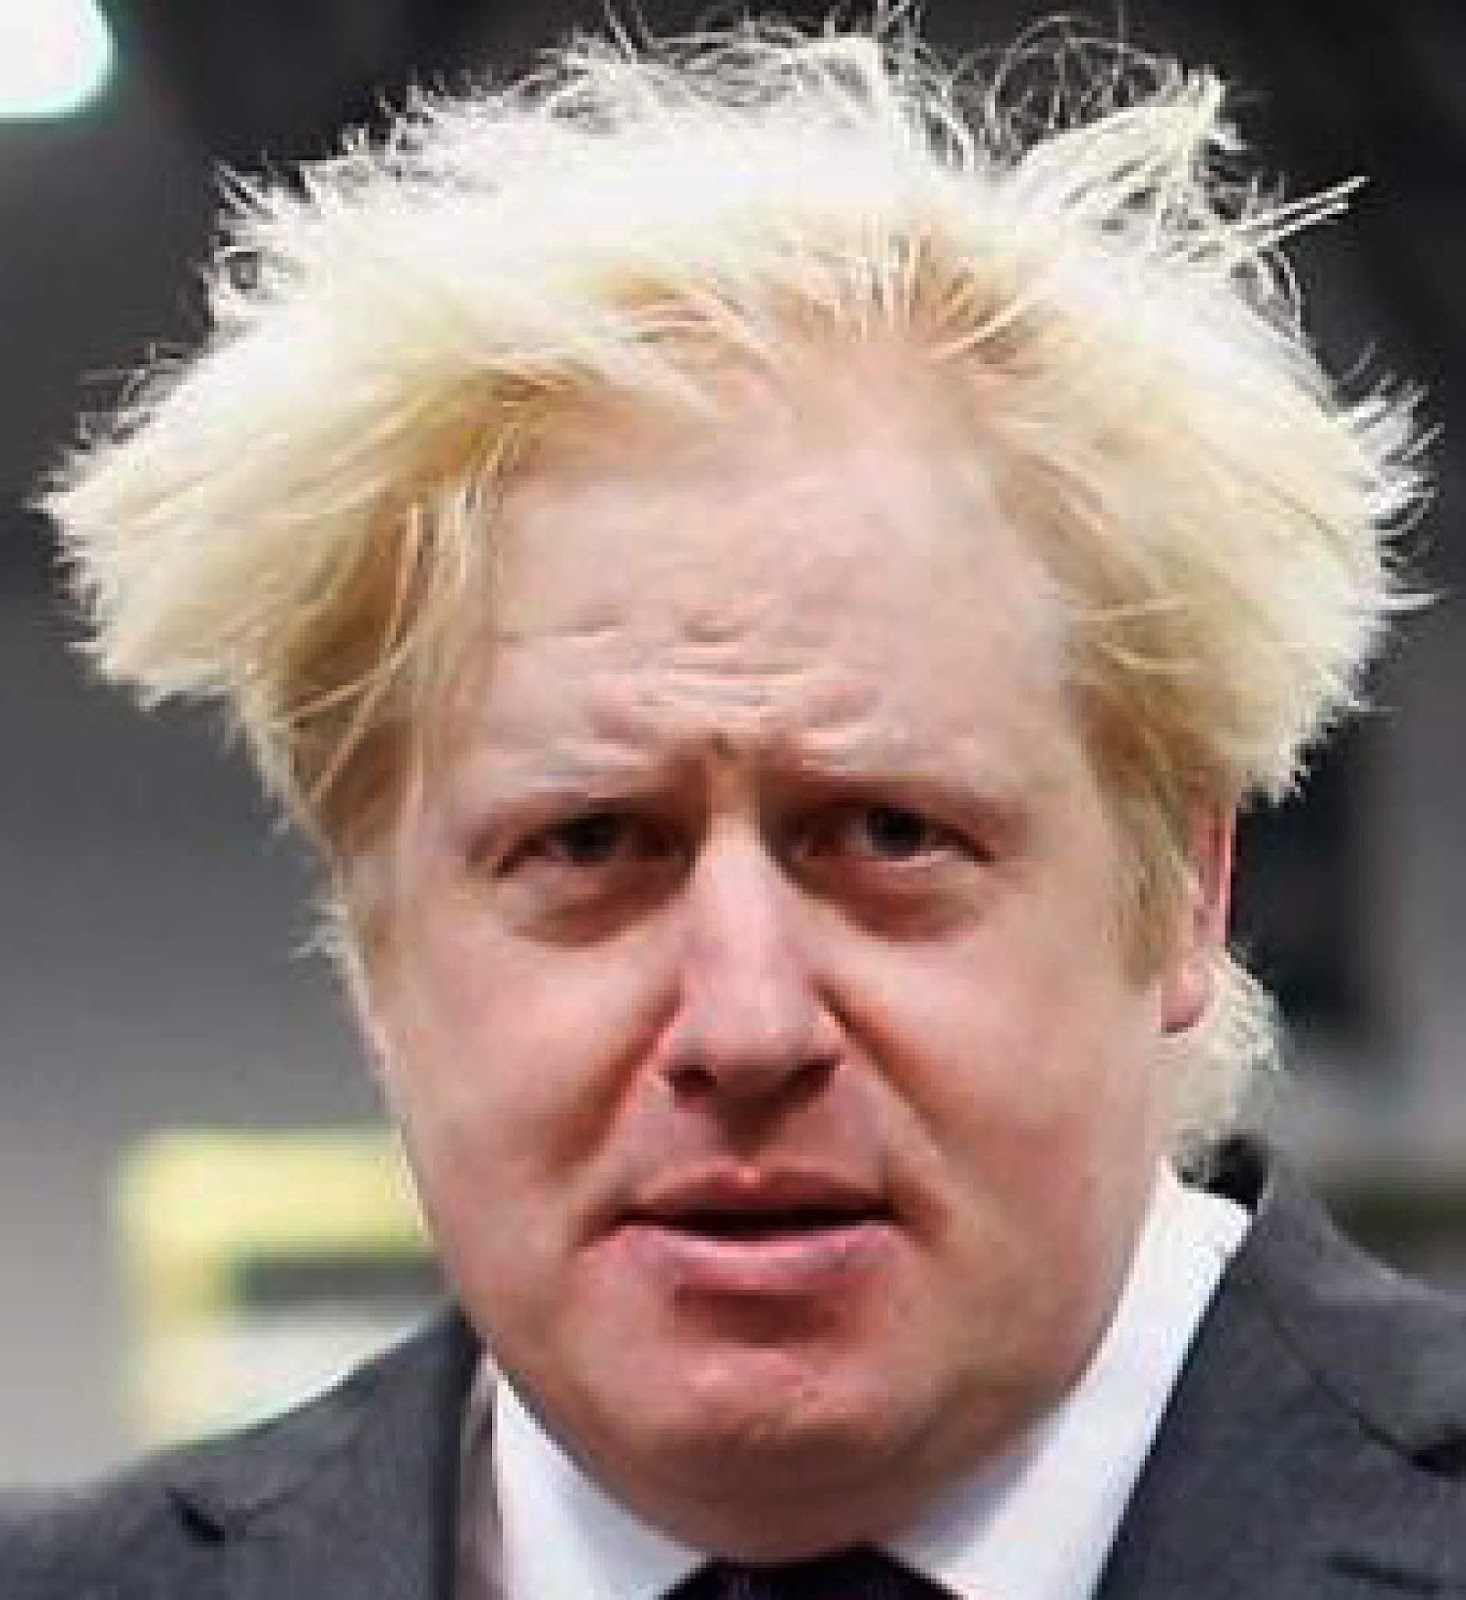 Политику со. Борис Джонсон мэр Лондона. Борис Джонсон растрепанный. Лохматый Джонсон. Борис Джонсон прическа.